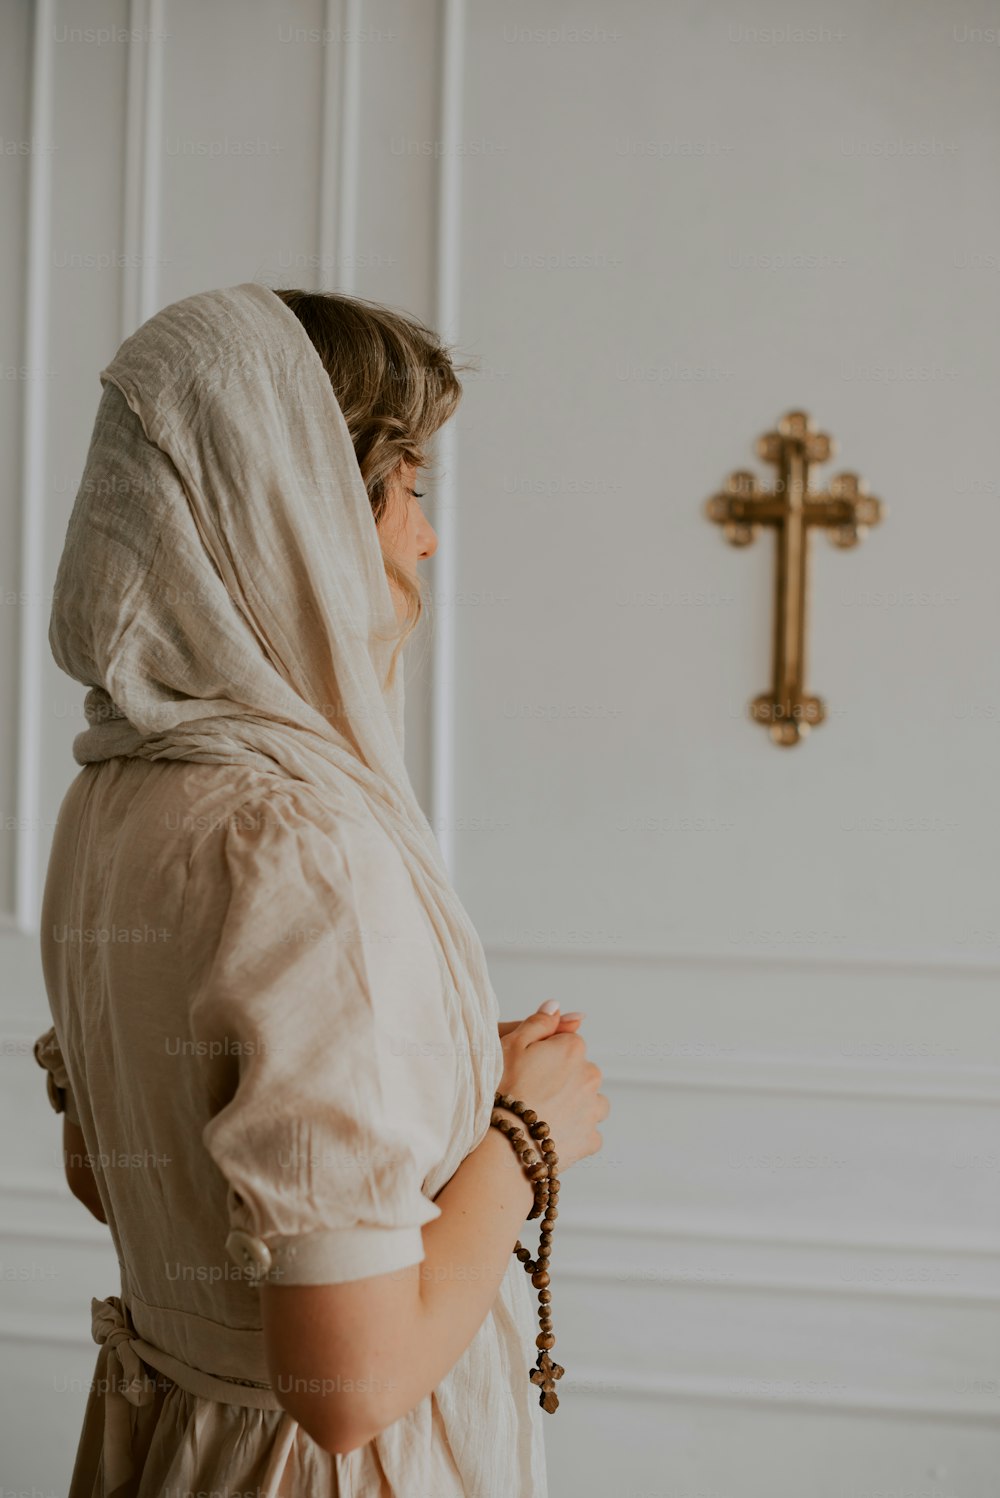 Una mujer con un vestido blanco parada frente a una cruz